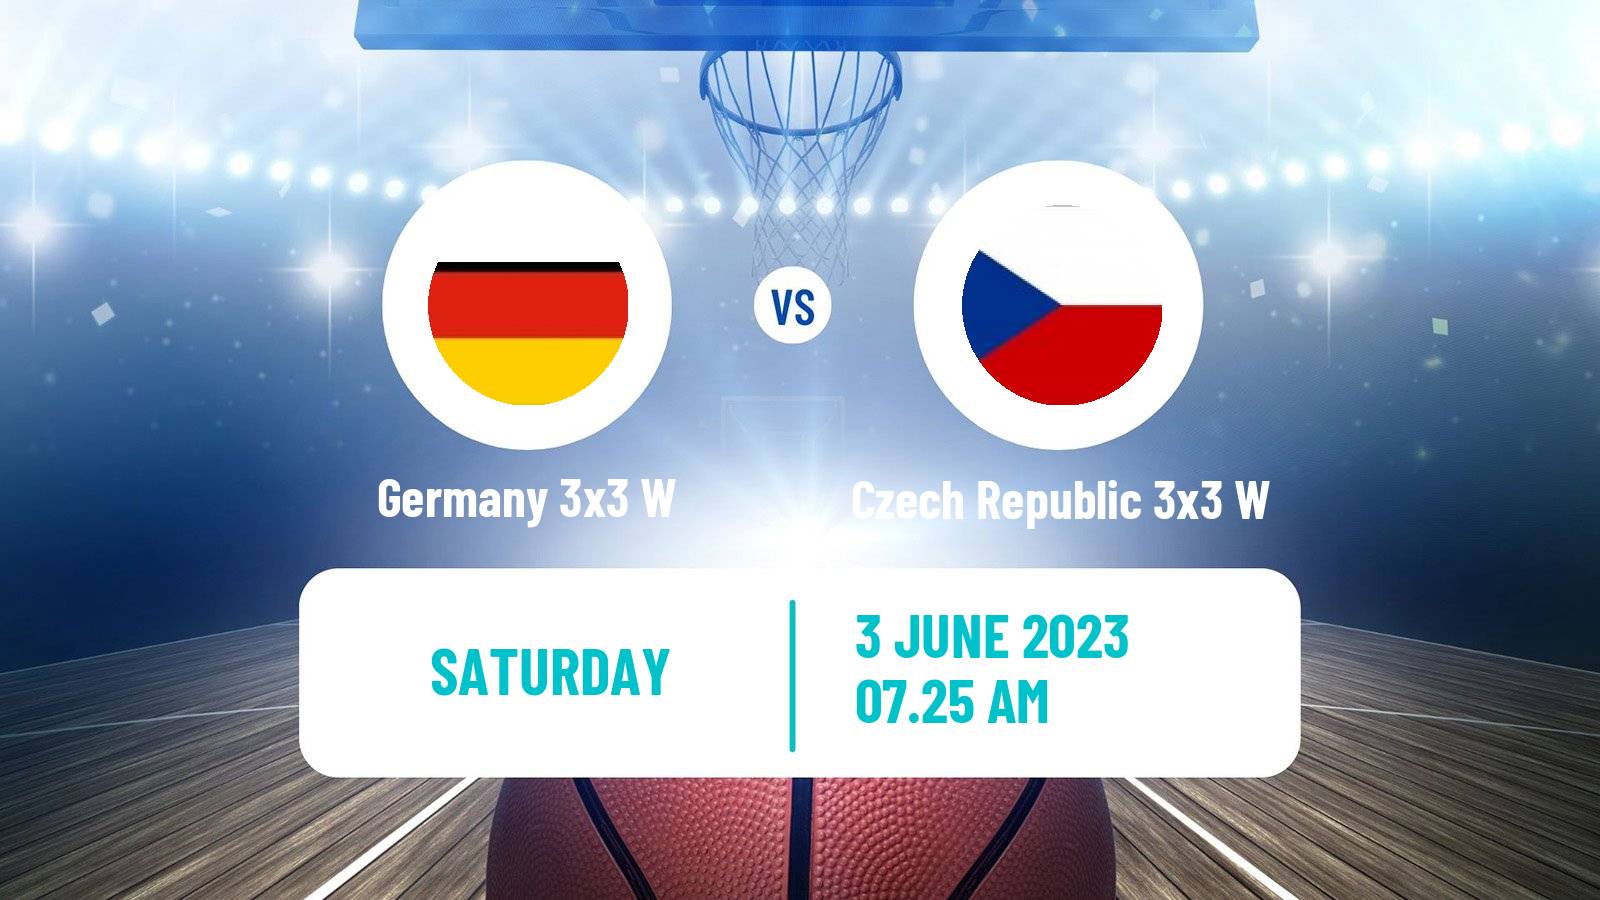 Basketball World Cup Basketball 3x3 Women Germany 3x3 W - Czech Republic 3x3 W